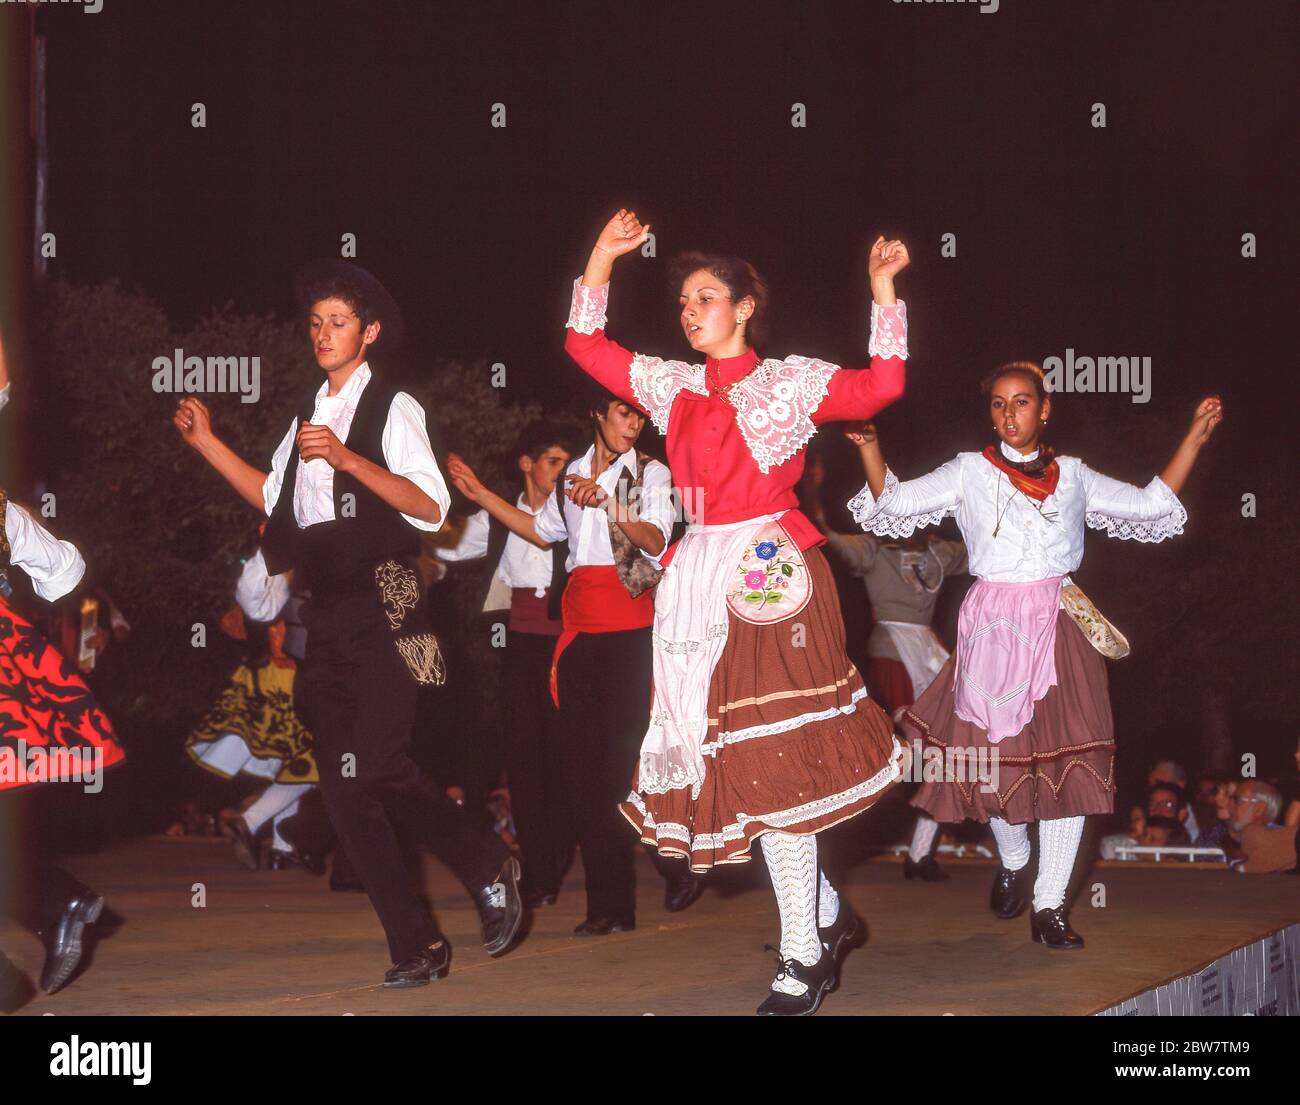 Junge Tänzer treten im Freien auf, Albufeira, Algarve Region, Portugal Stockfoto